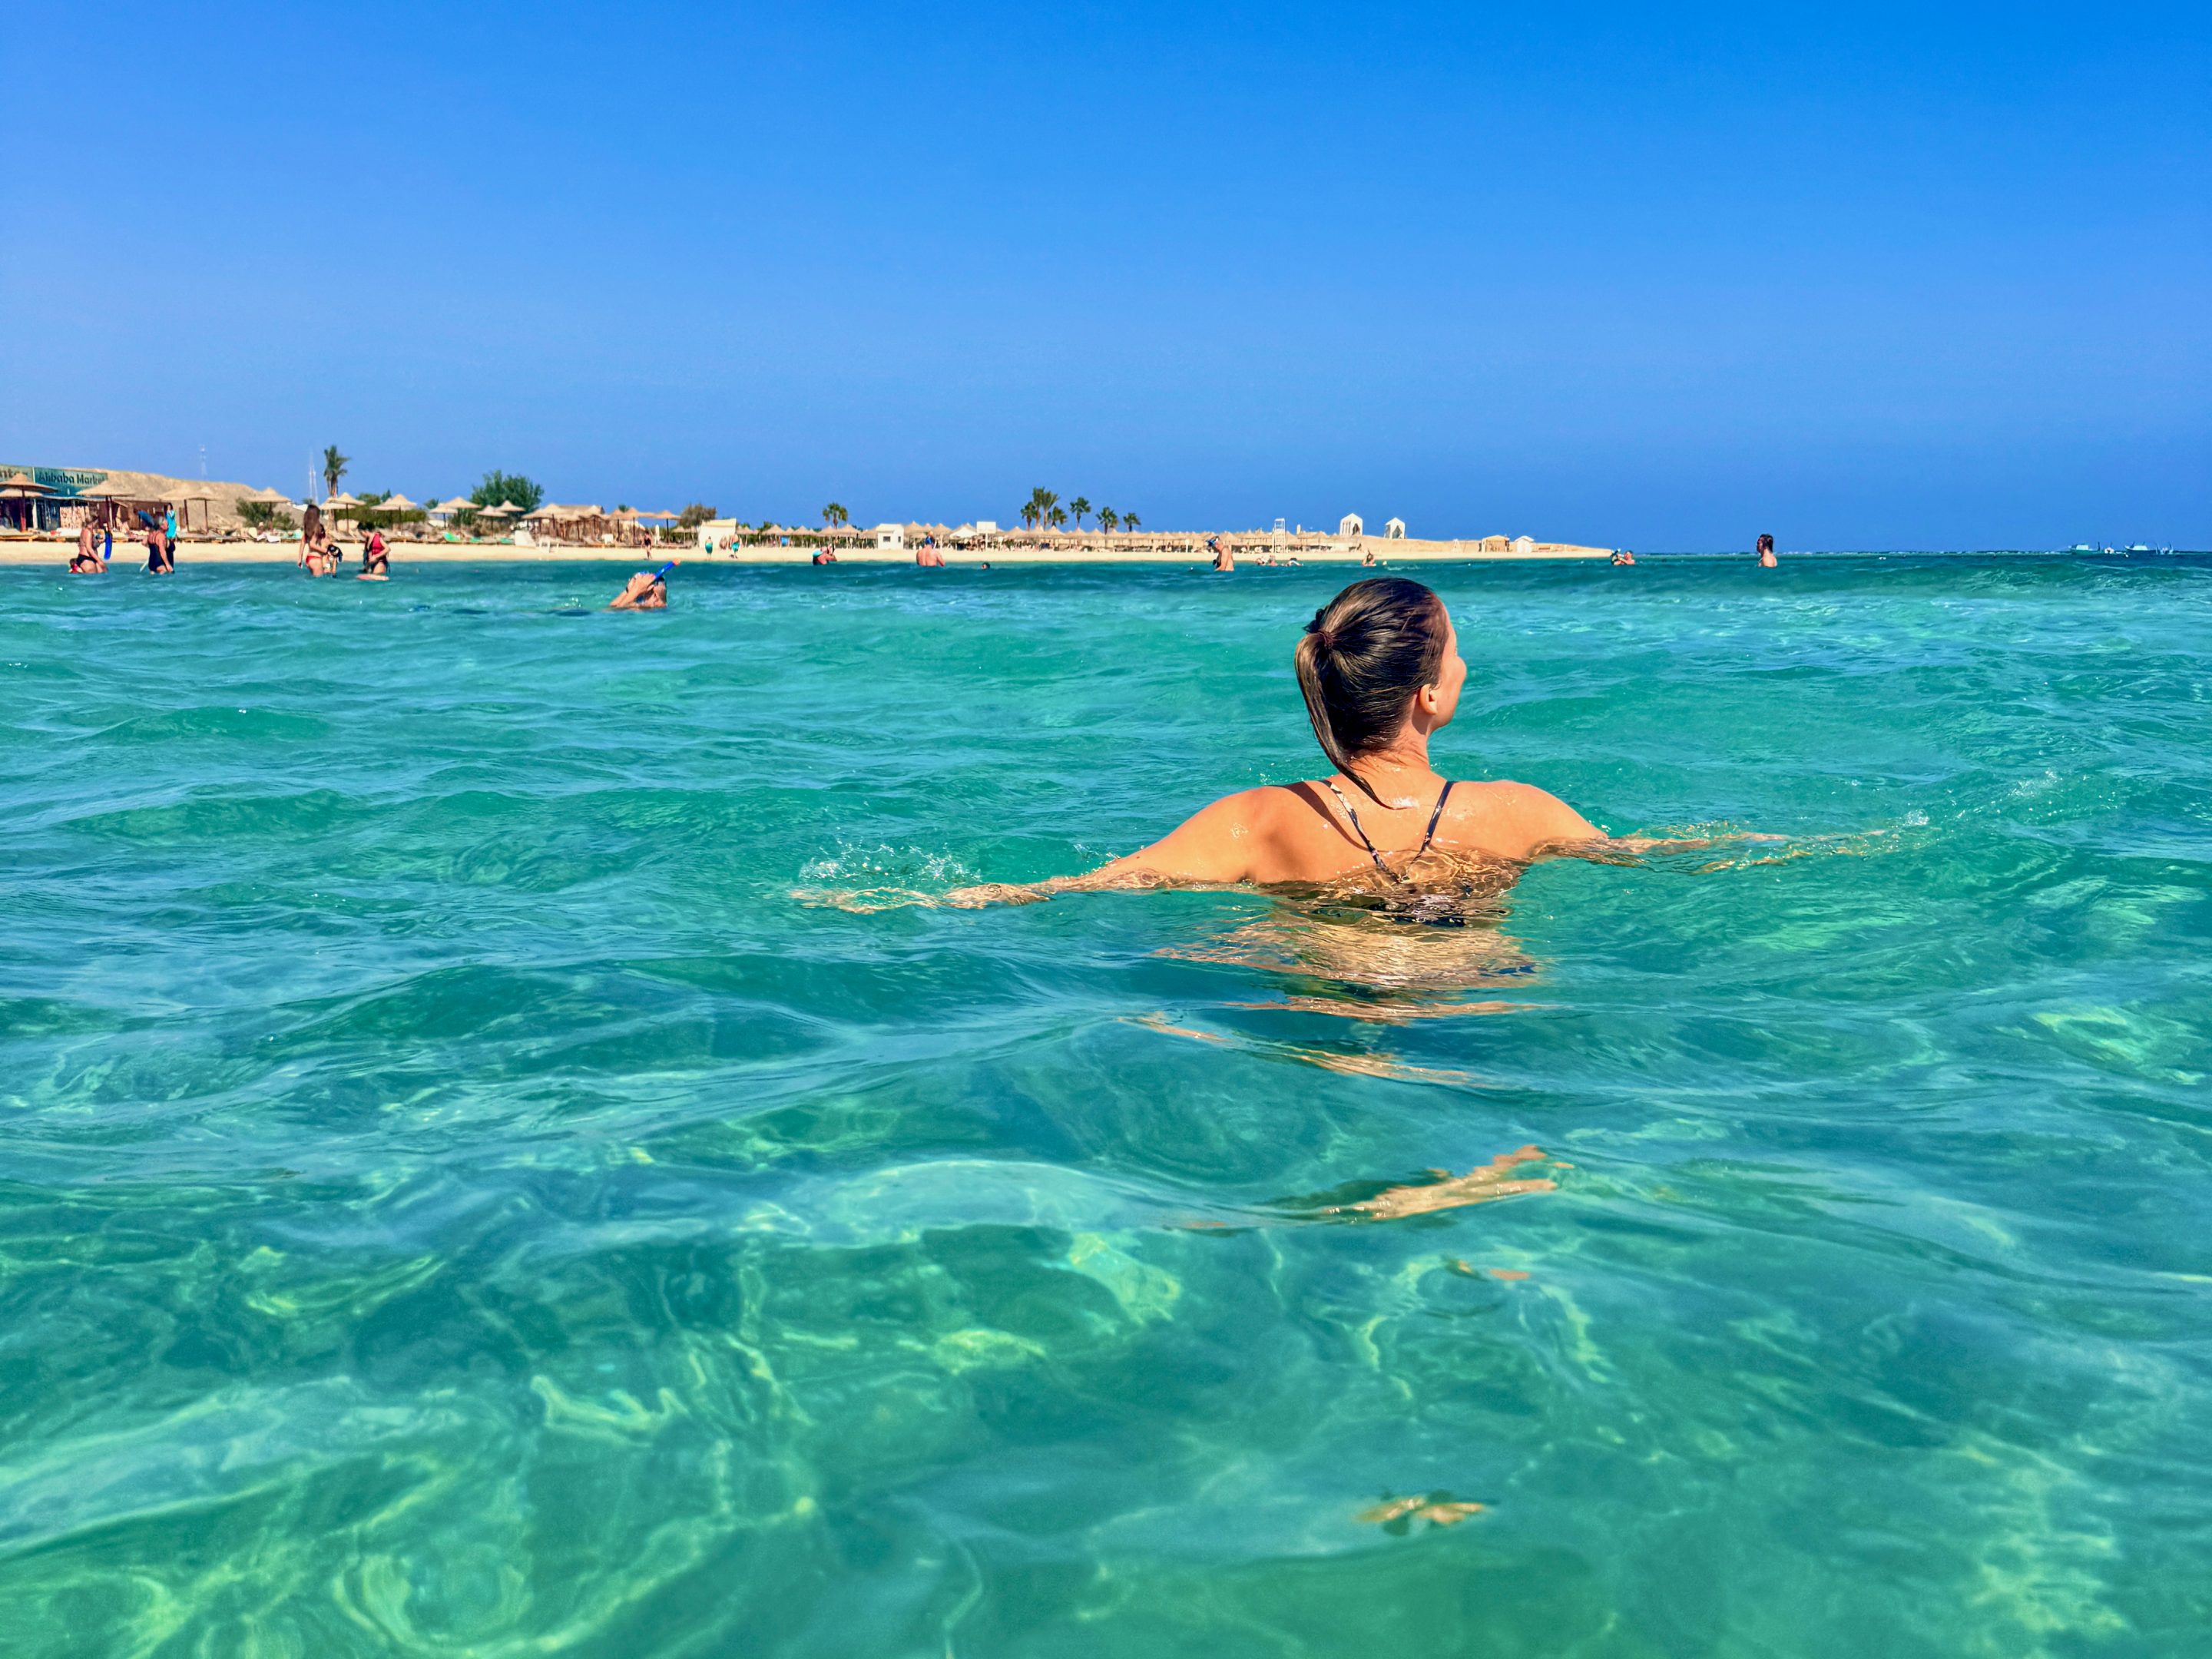 Baignade, baignade, plongée en apnée, la baie d'Abu Dabbab est tout simplement idéale pour les amoureux de la mer comme nous. Photo de : Hilton Marsa Alam Nubian Resort Experiences